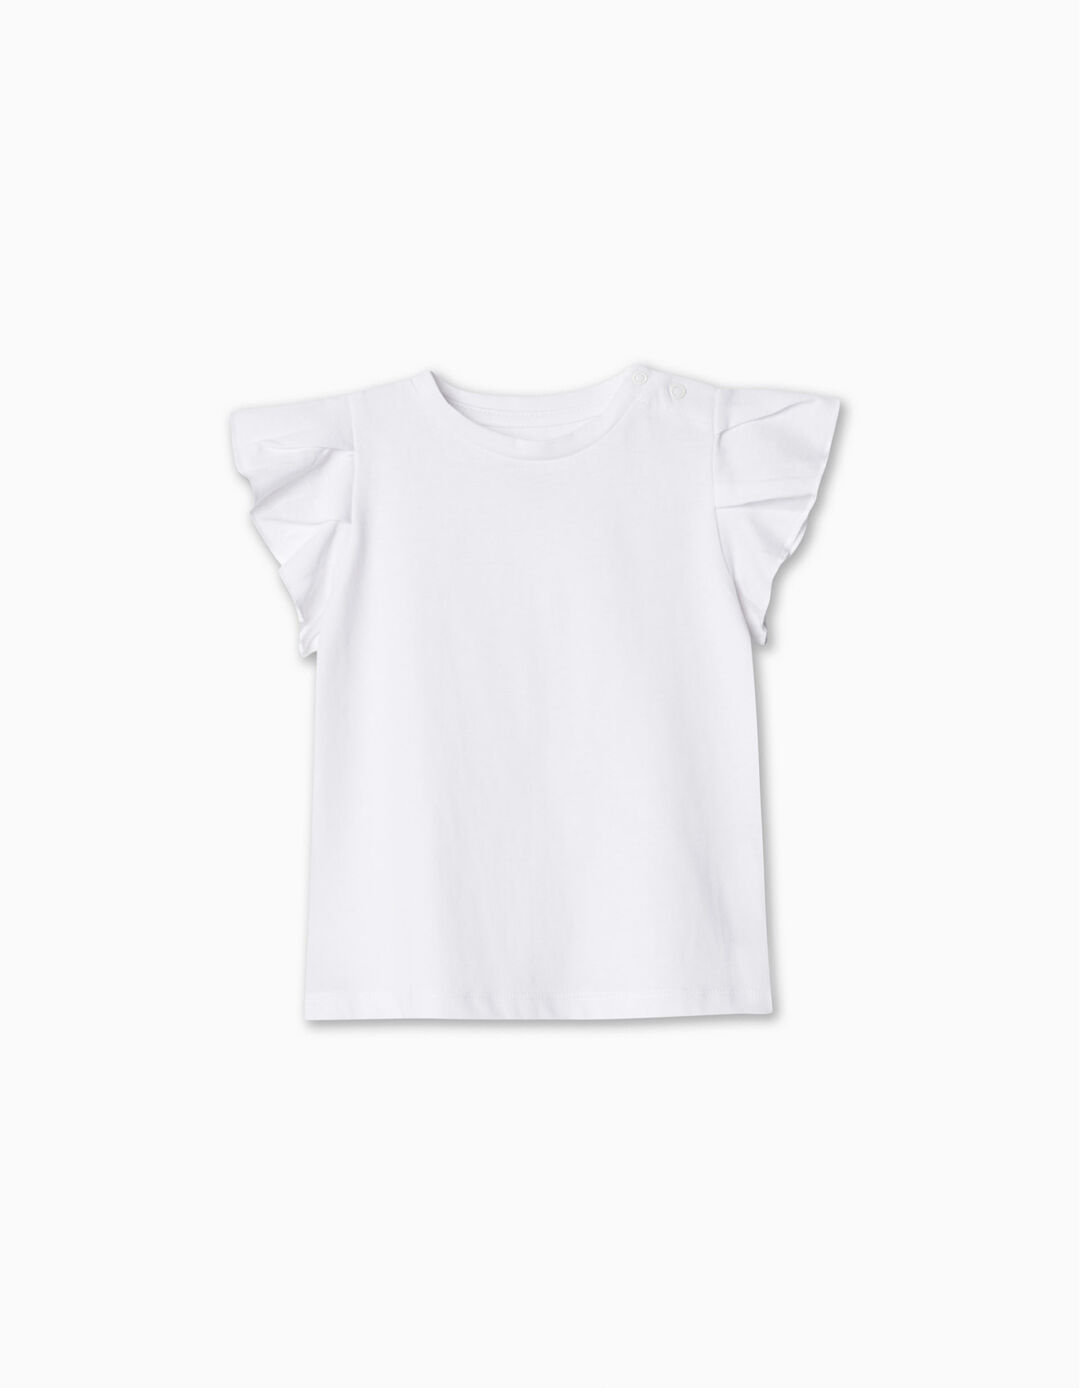 Ruffled T-shirt, Baby Girl, White